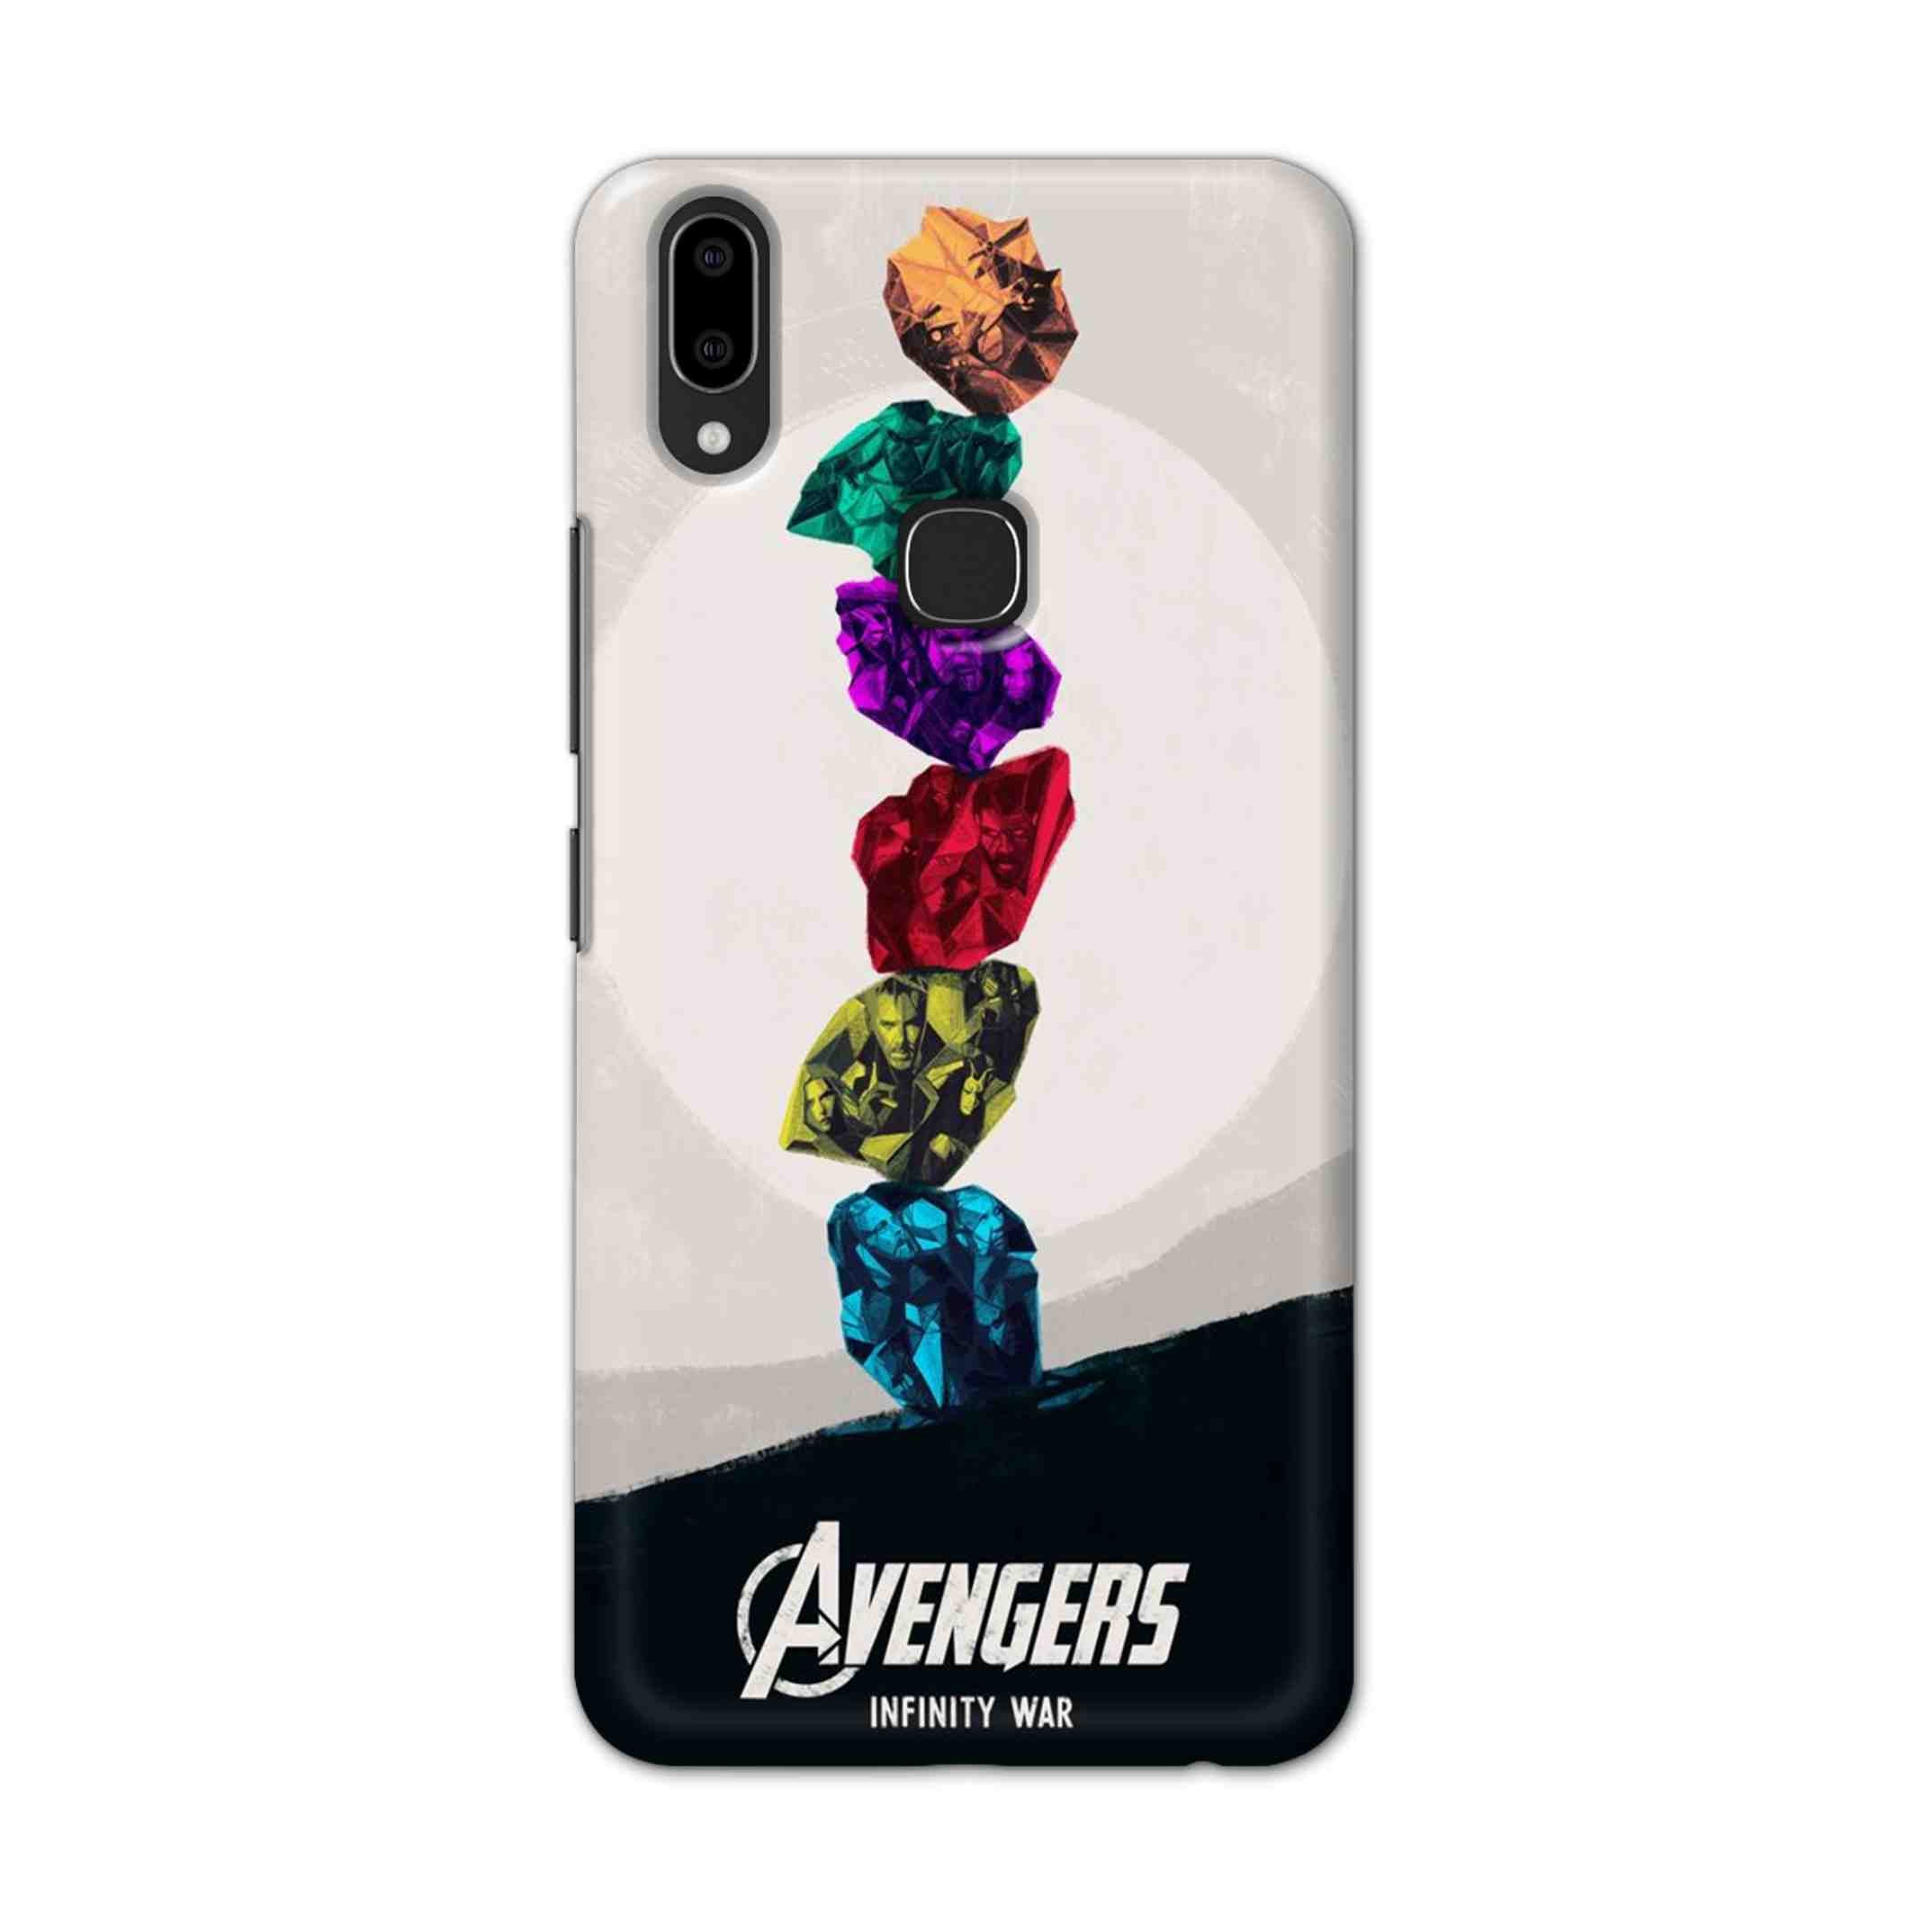 Buy Avengers Stone Hard Back Mobile Phone Case Cover For Vivo V9 / V9 Youth Online